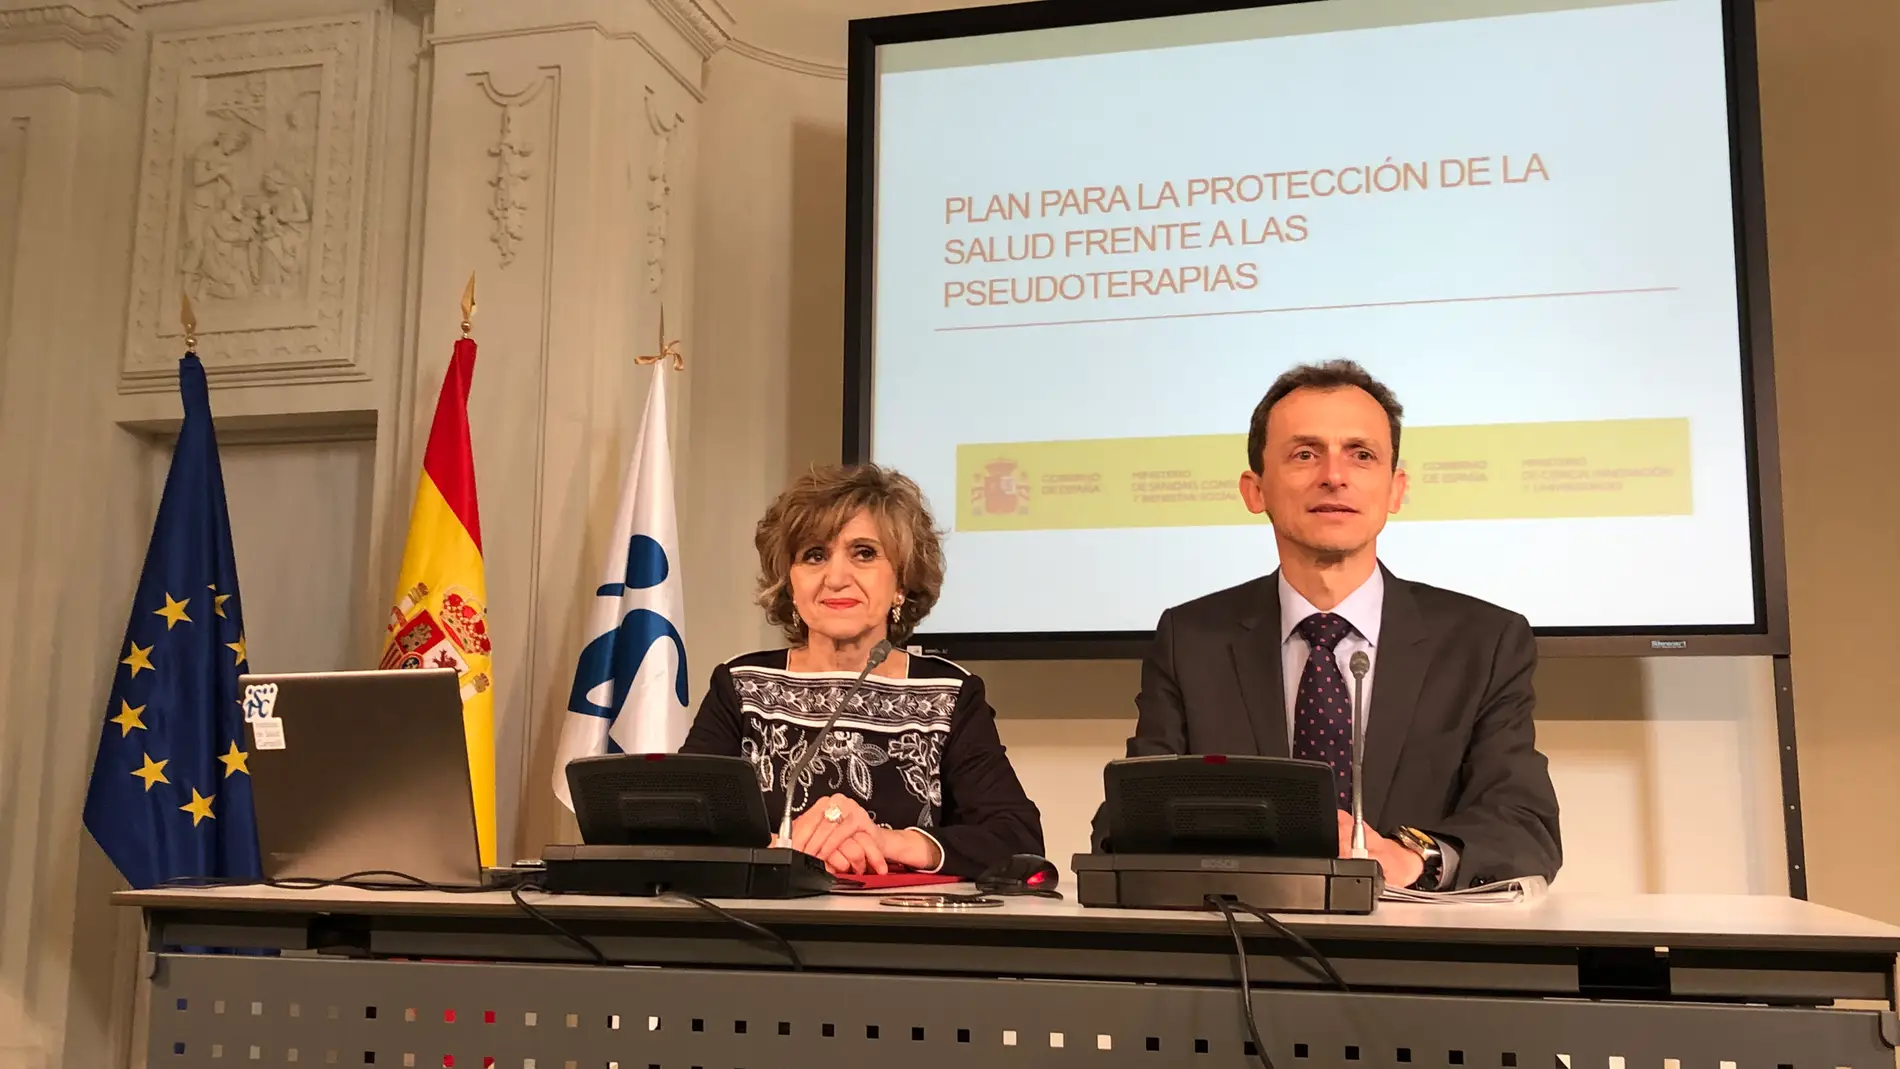 El Gobierno presenta el Plan de Protección de la Salud frente a las Pseudoterapias